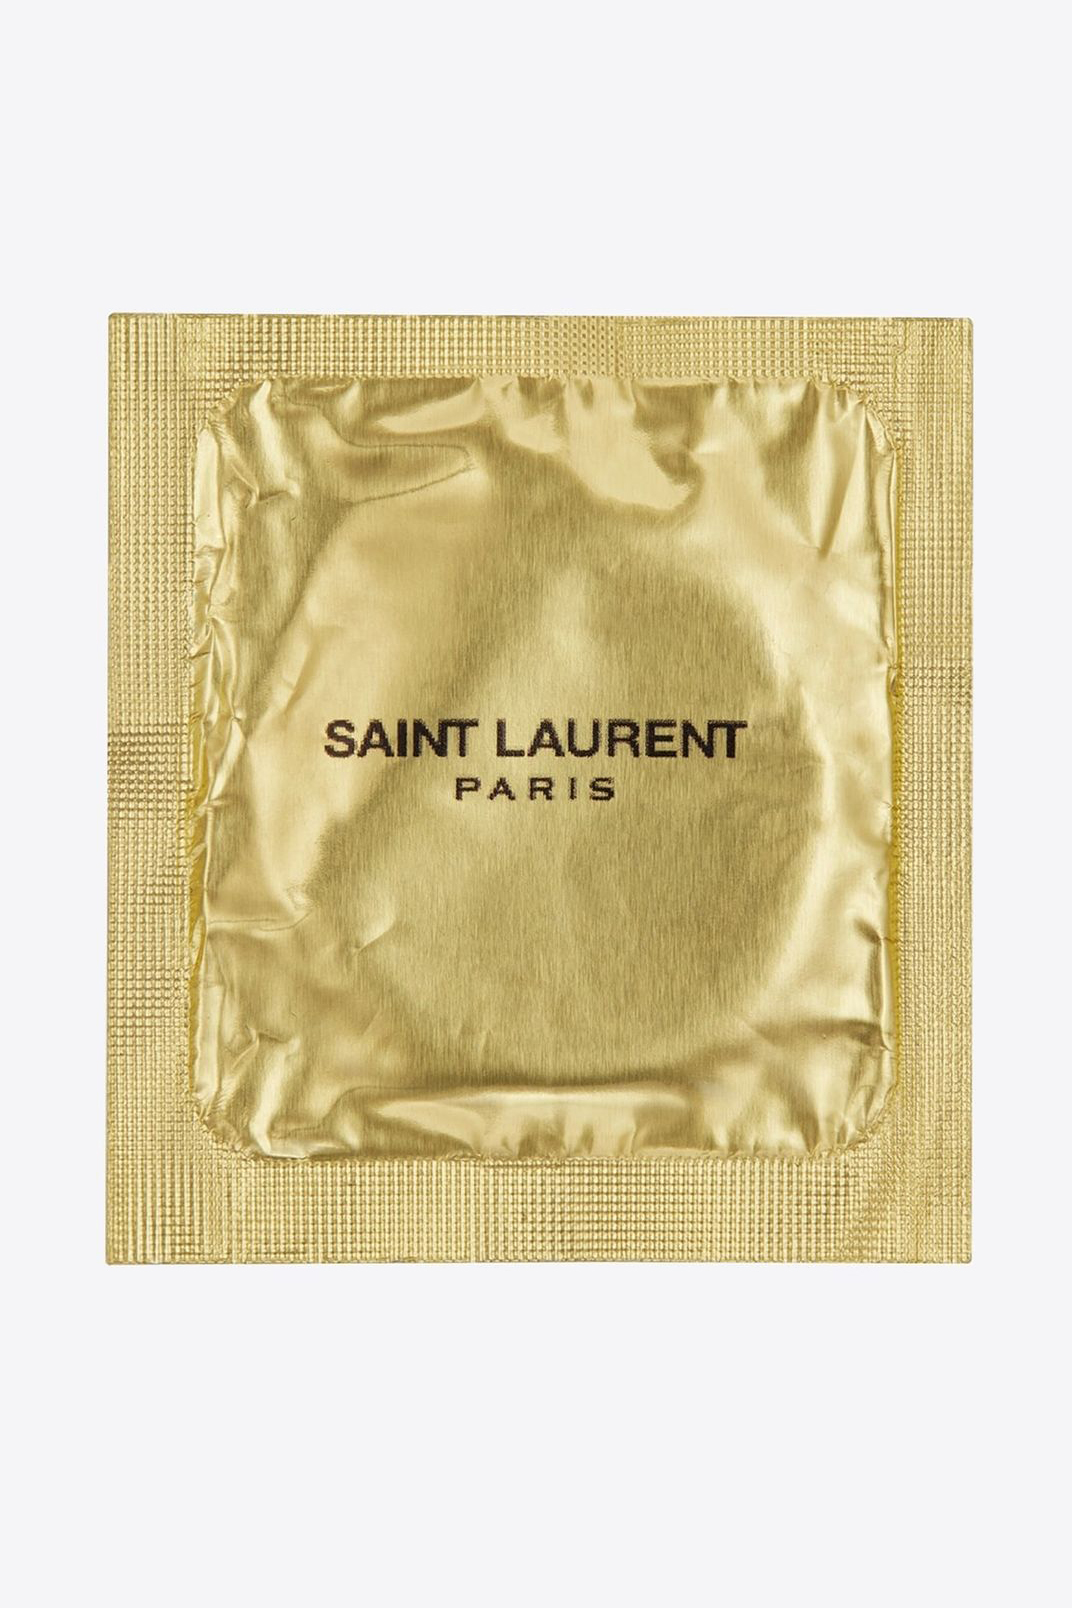 Saint Laurent 推出要价 €2 欧元之别注避孕套系列